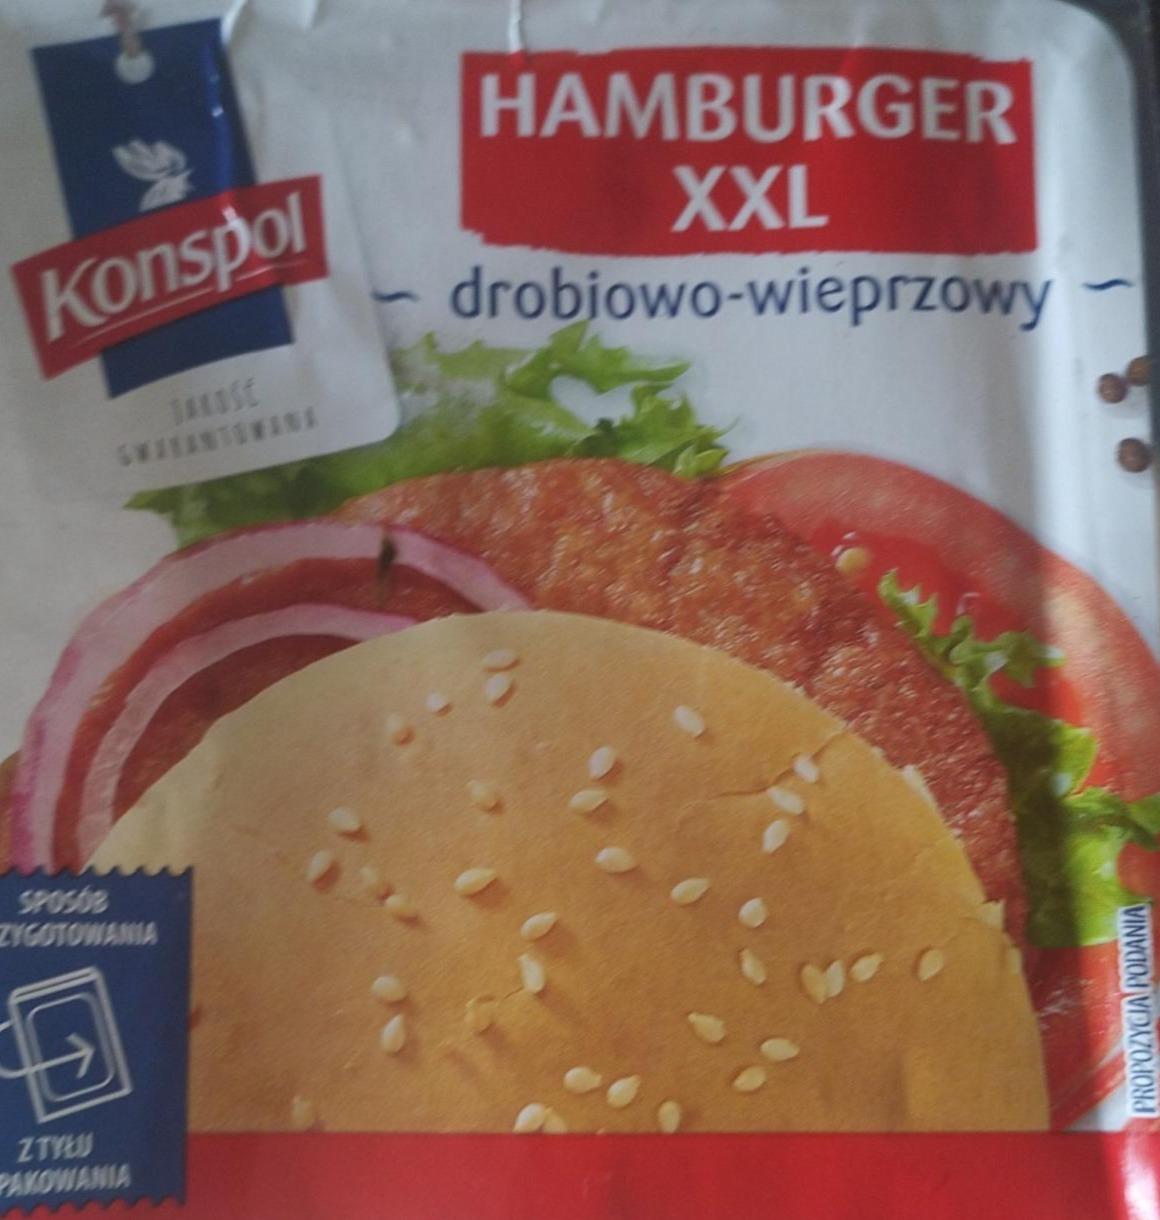 Фото - Гамбургер XXL Hamburger Konspol